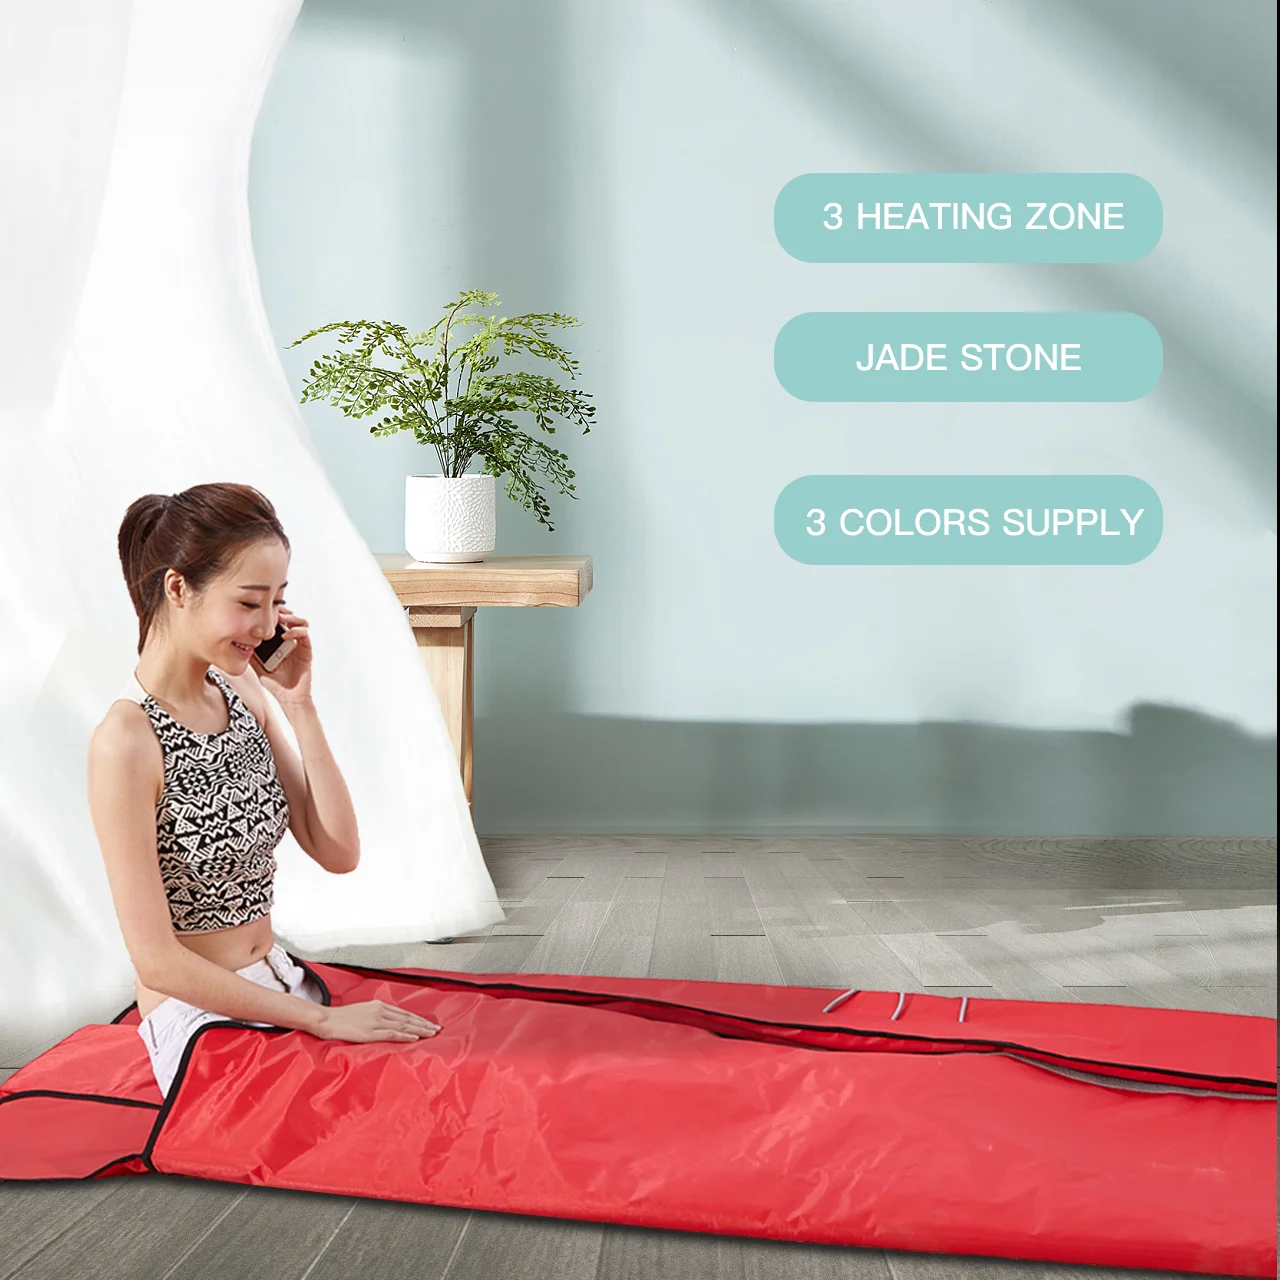 

Массажное электрическое тепловое одеяло для сауны с дальним инфракрасным излучением для снижения усталости